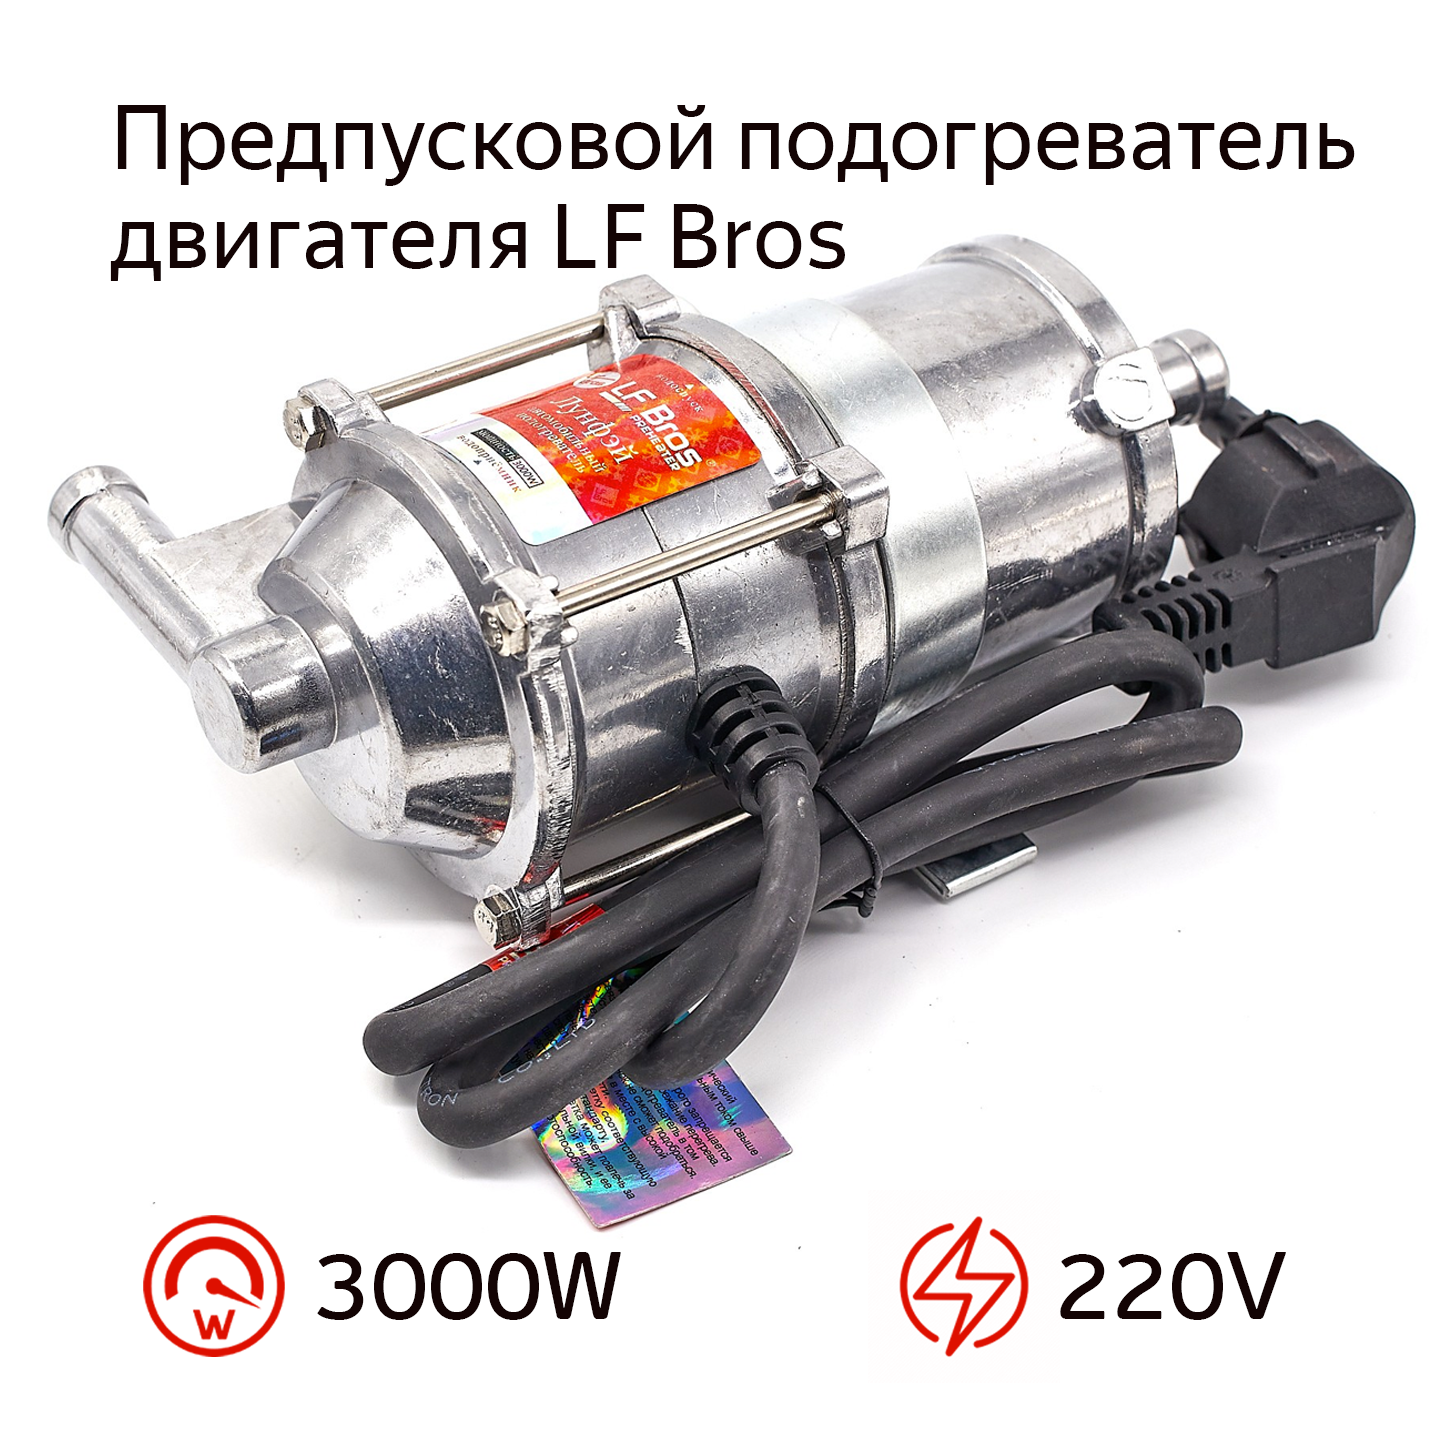 Предпусковой подогреватель двигателя с помпой LF Bros 85℃ 3000W(Ватт) 220V